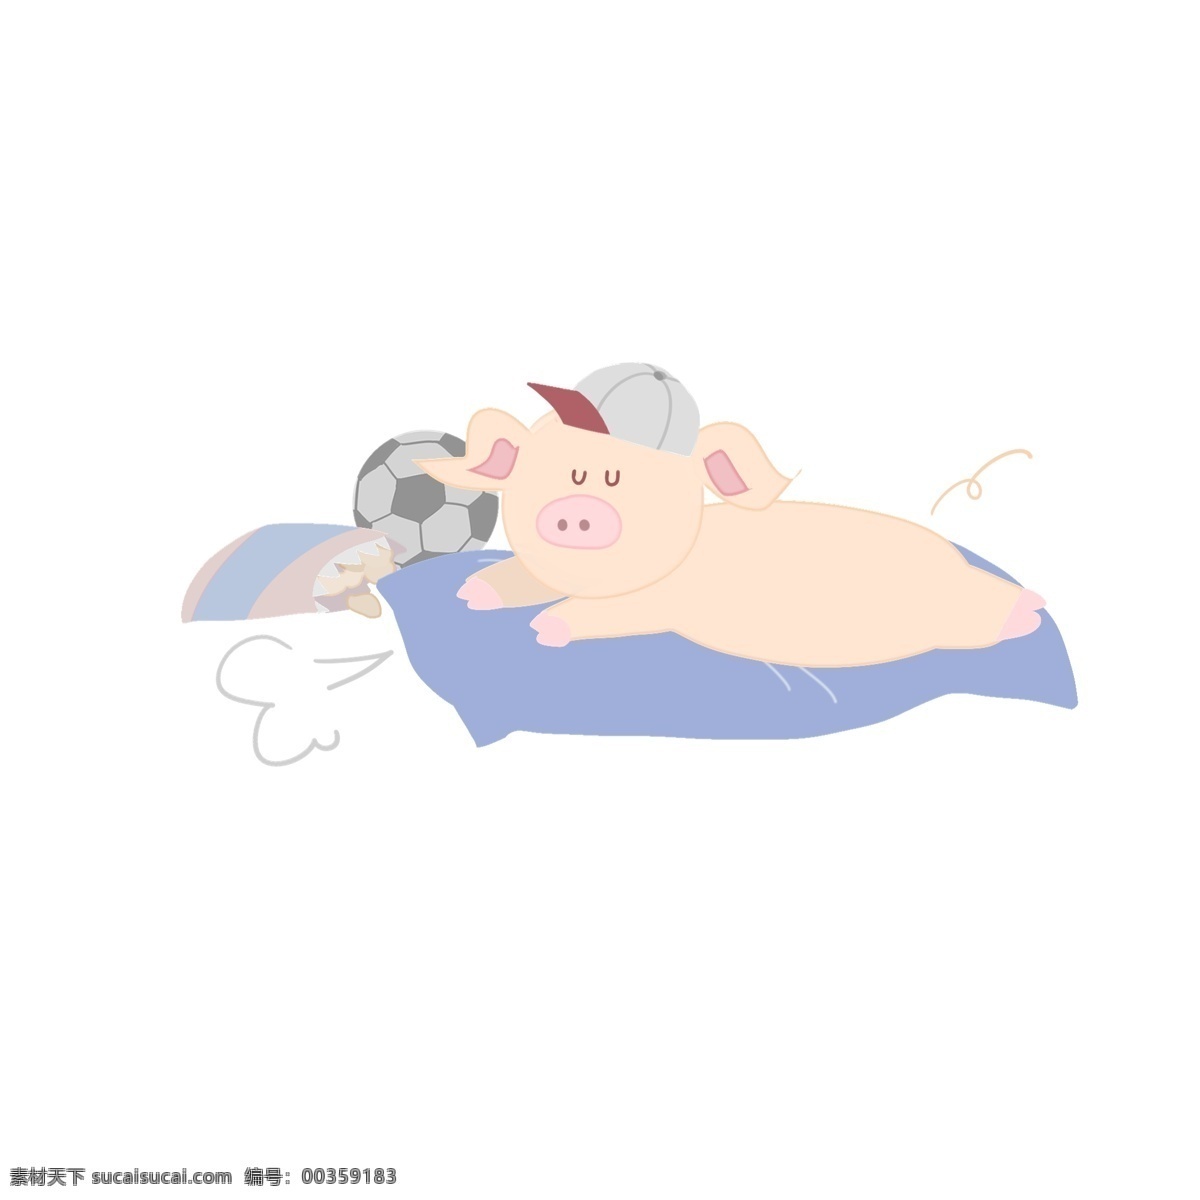 2019 年 猪年 可爱 猪 男孩 建议 生活 小猪 新年 治愈 慵懒 猪猪男孩